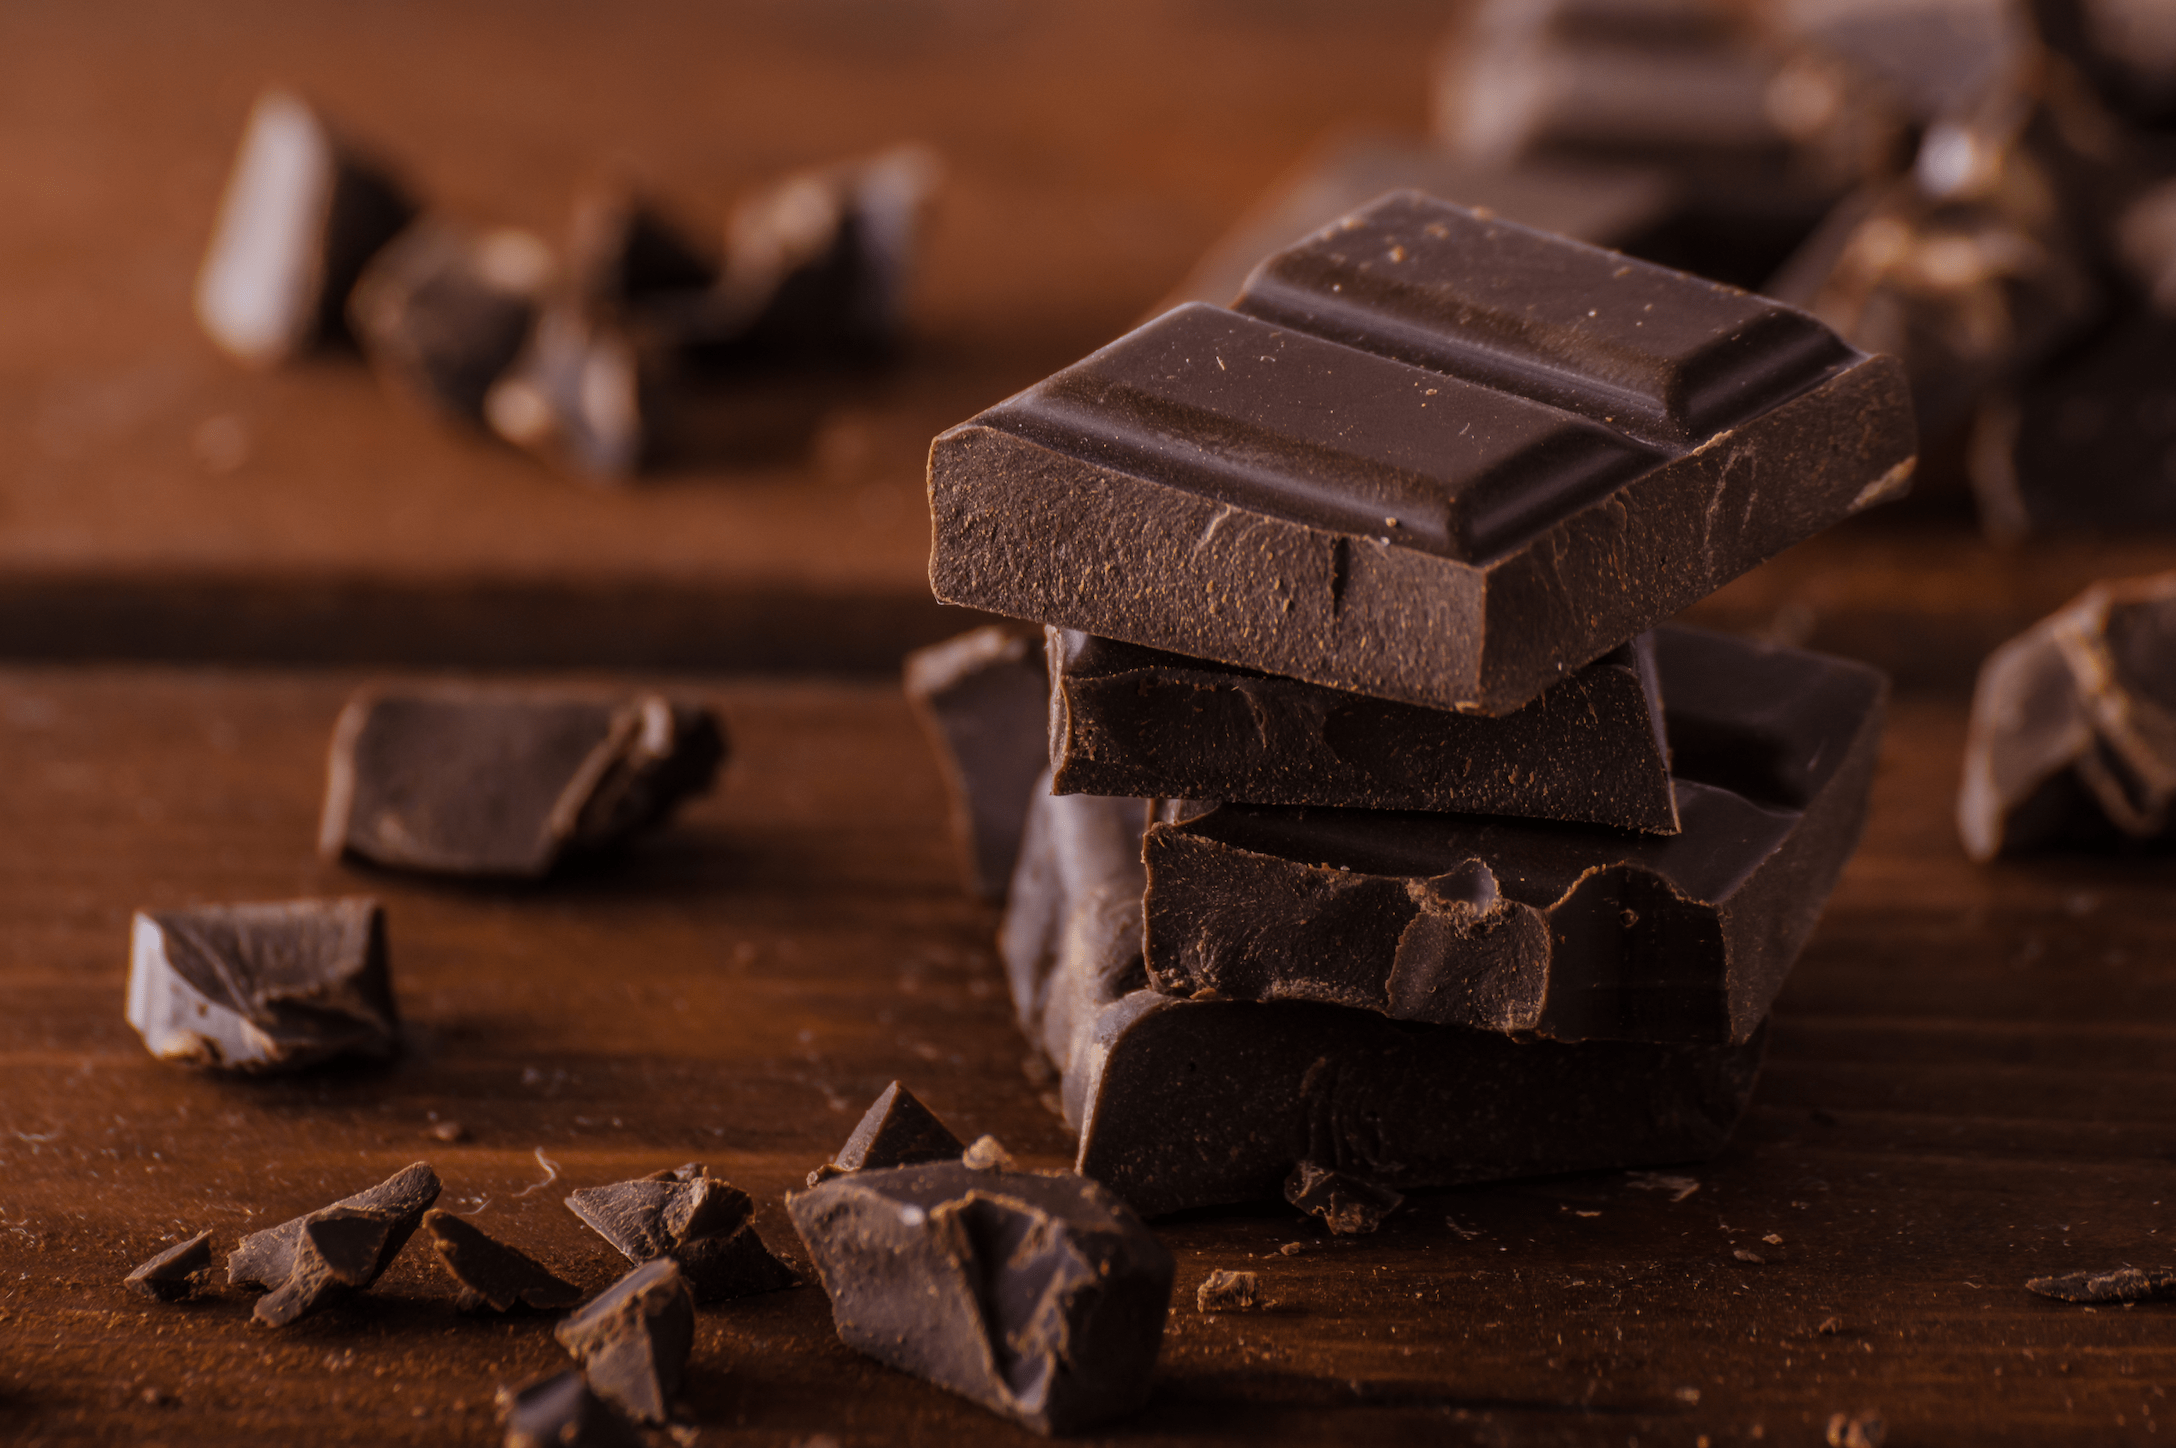 Bitter çikolatanın kanıtlanmış 7 faydası #1